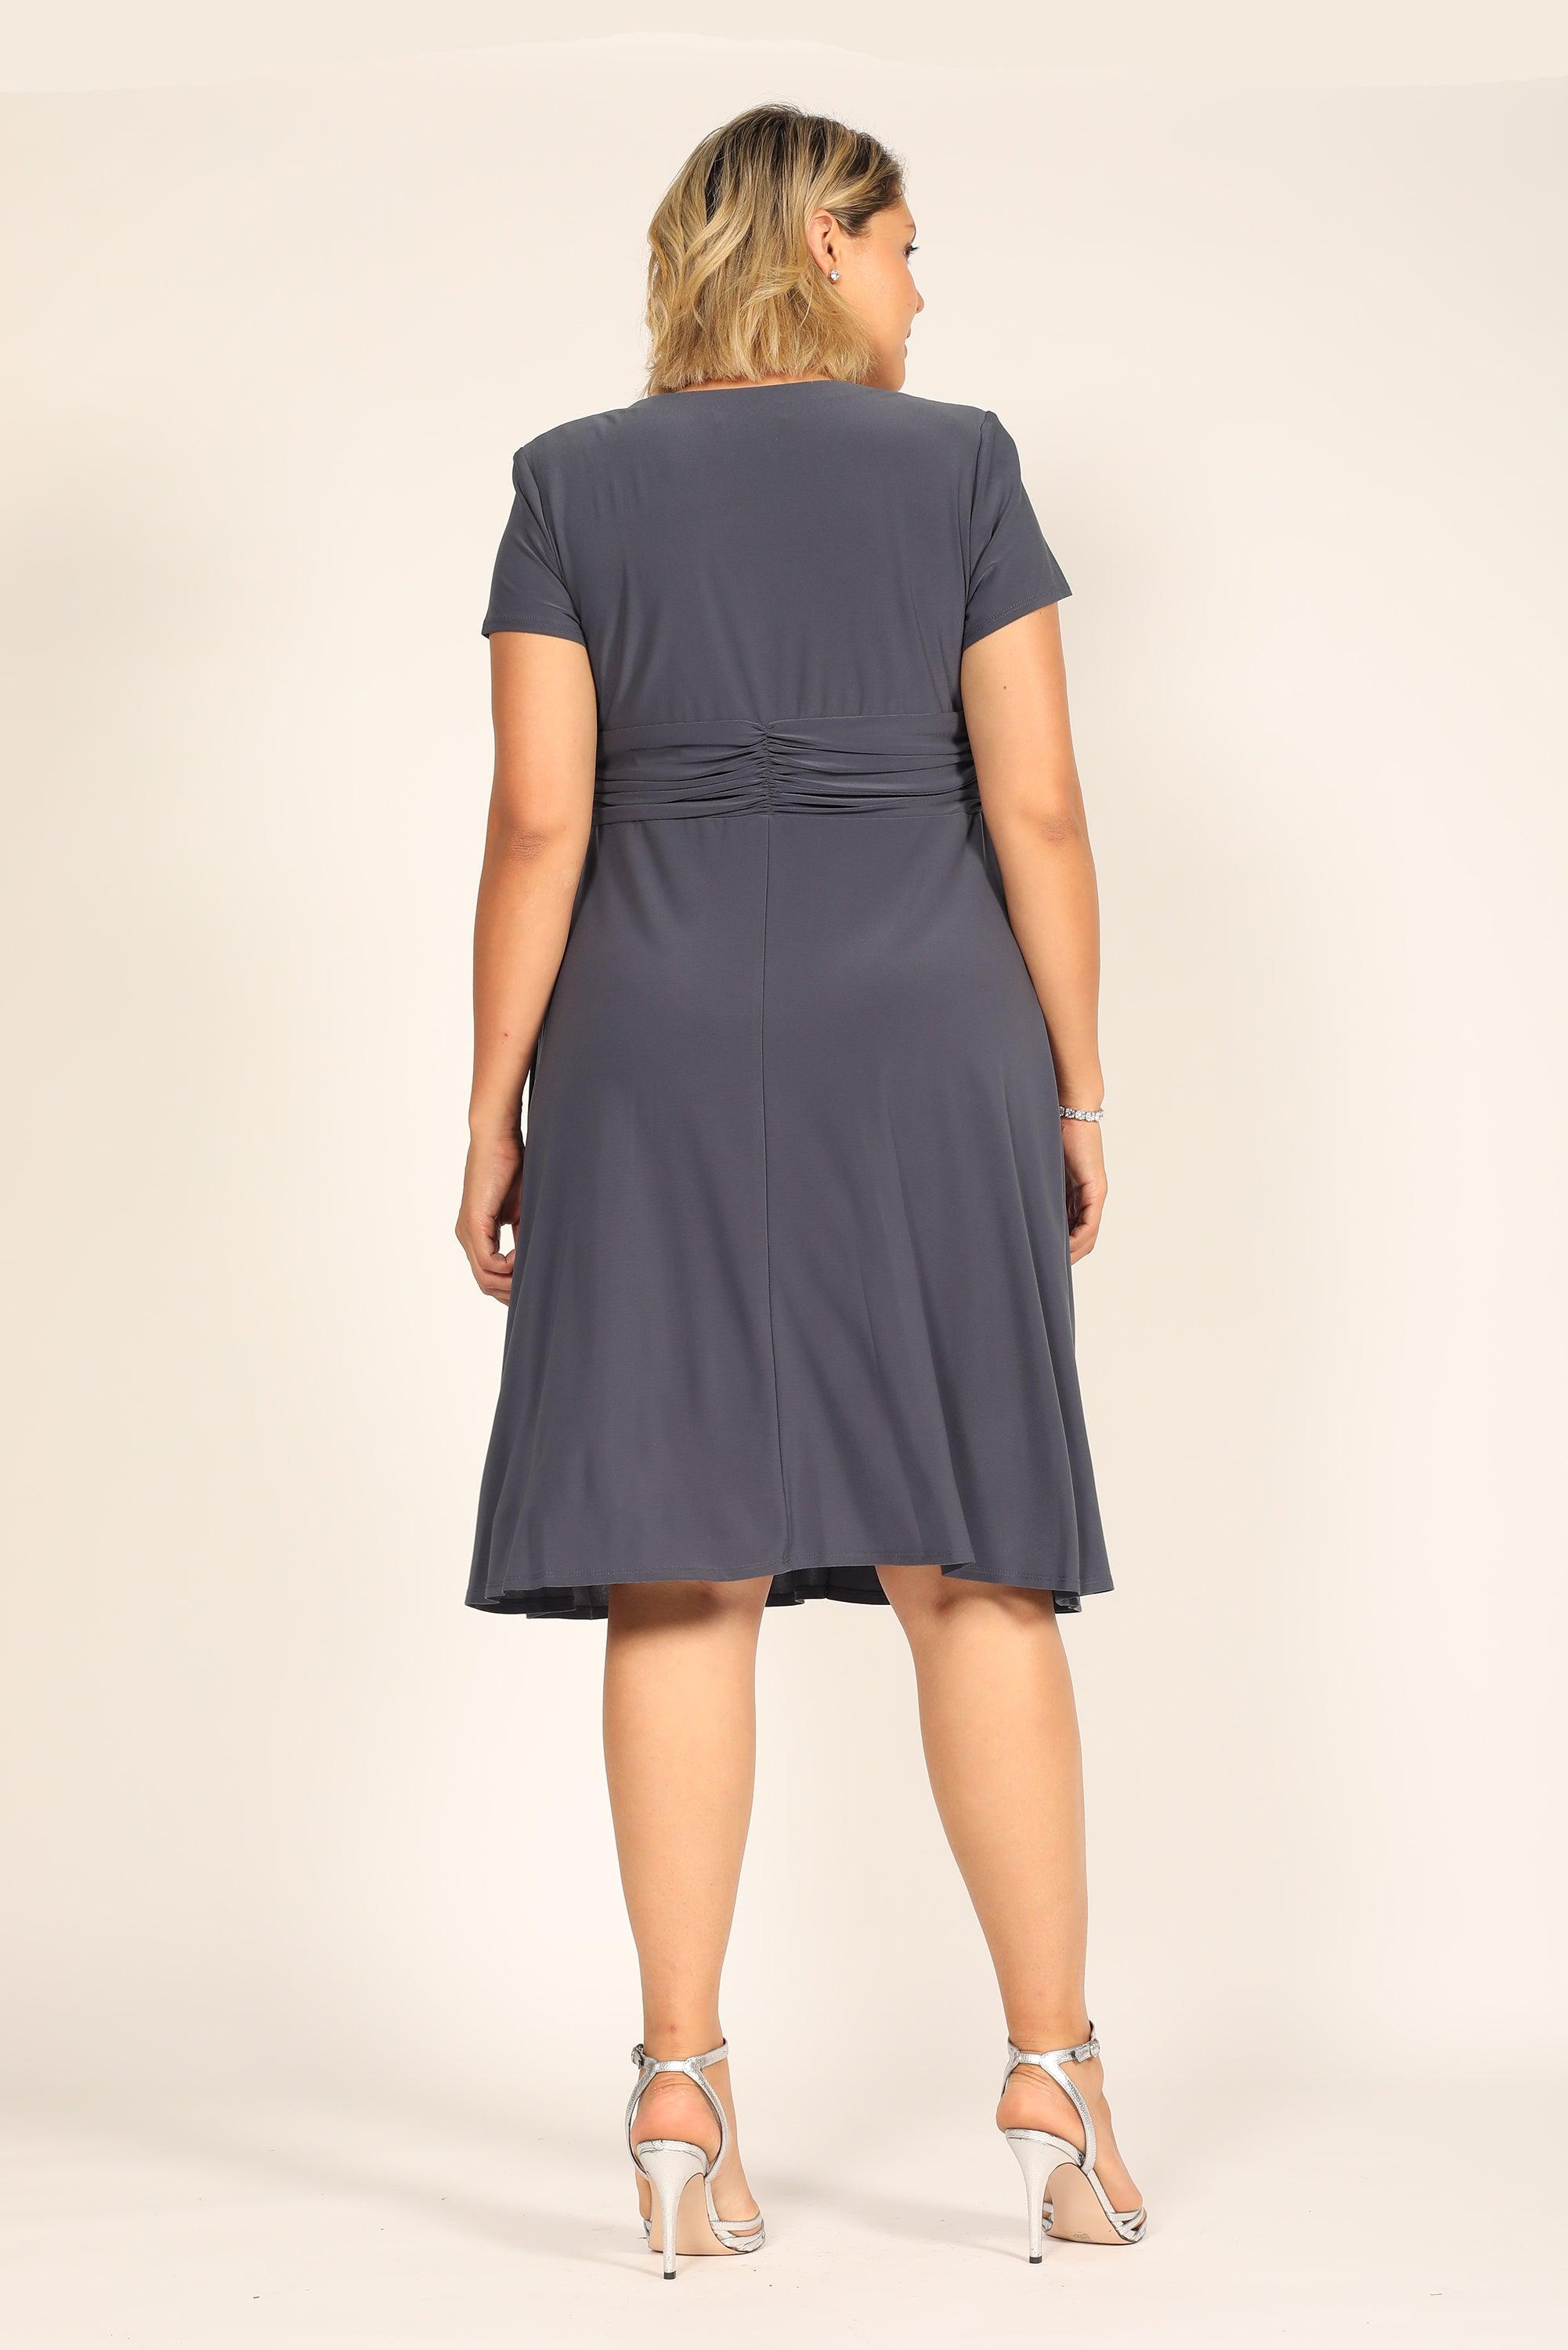 R&M Richards Short Plus Size Dress Black 1149 - The Dress Outlet